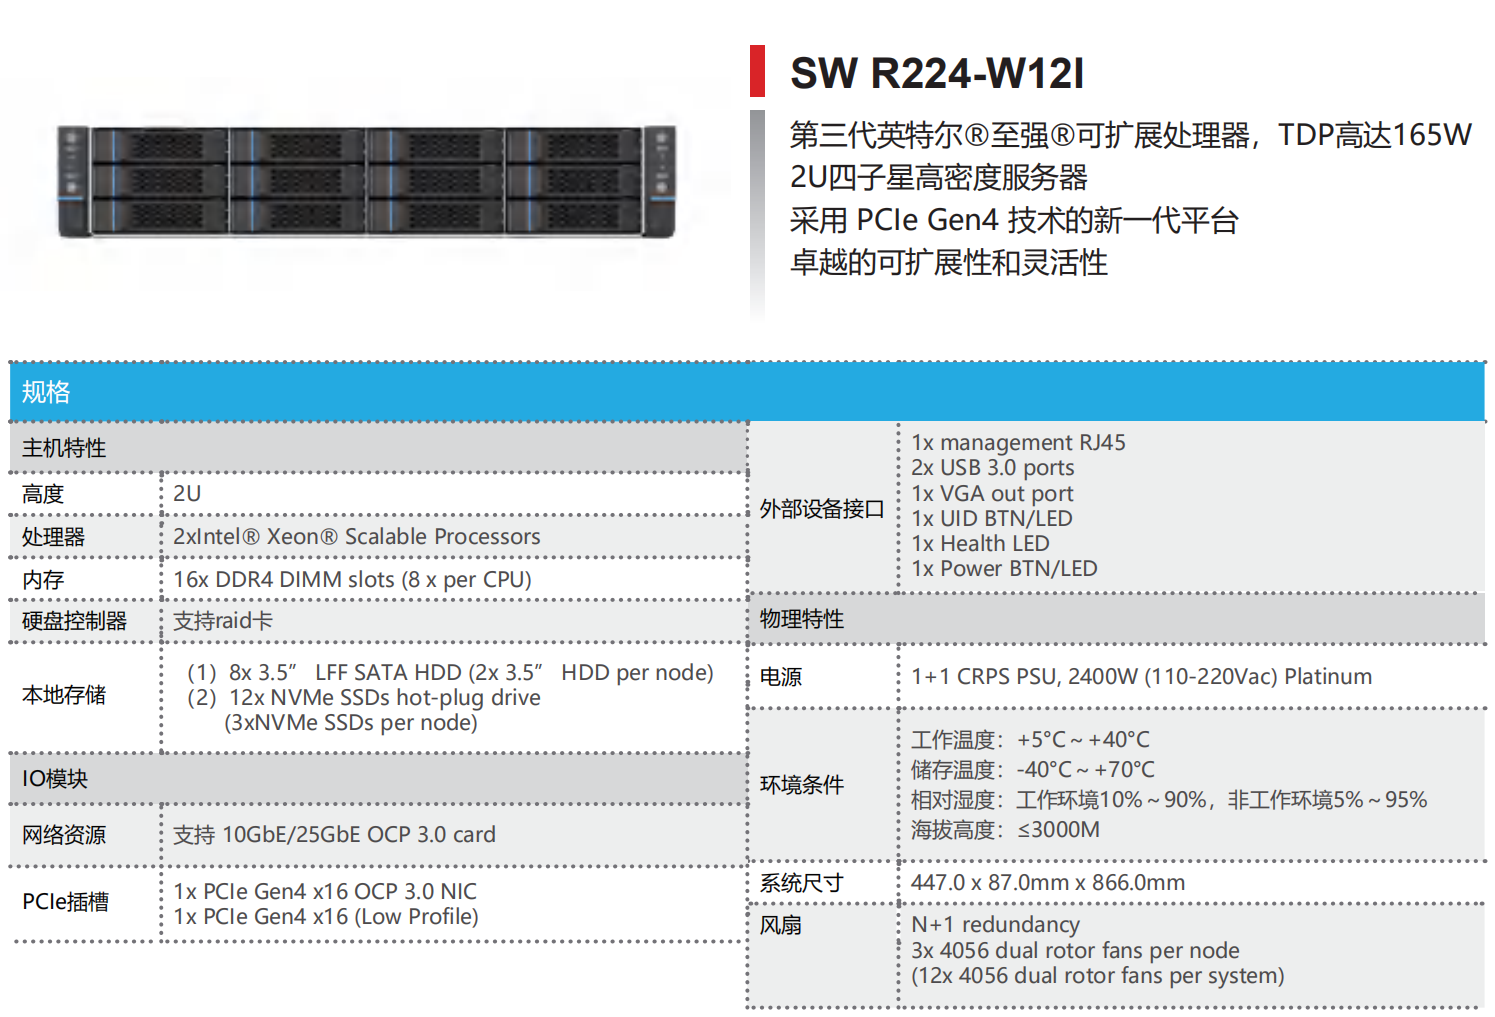 INTEL 平台高密度服务器—SW R224-W12I